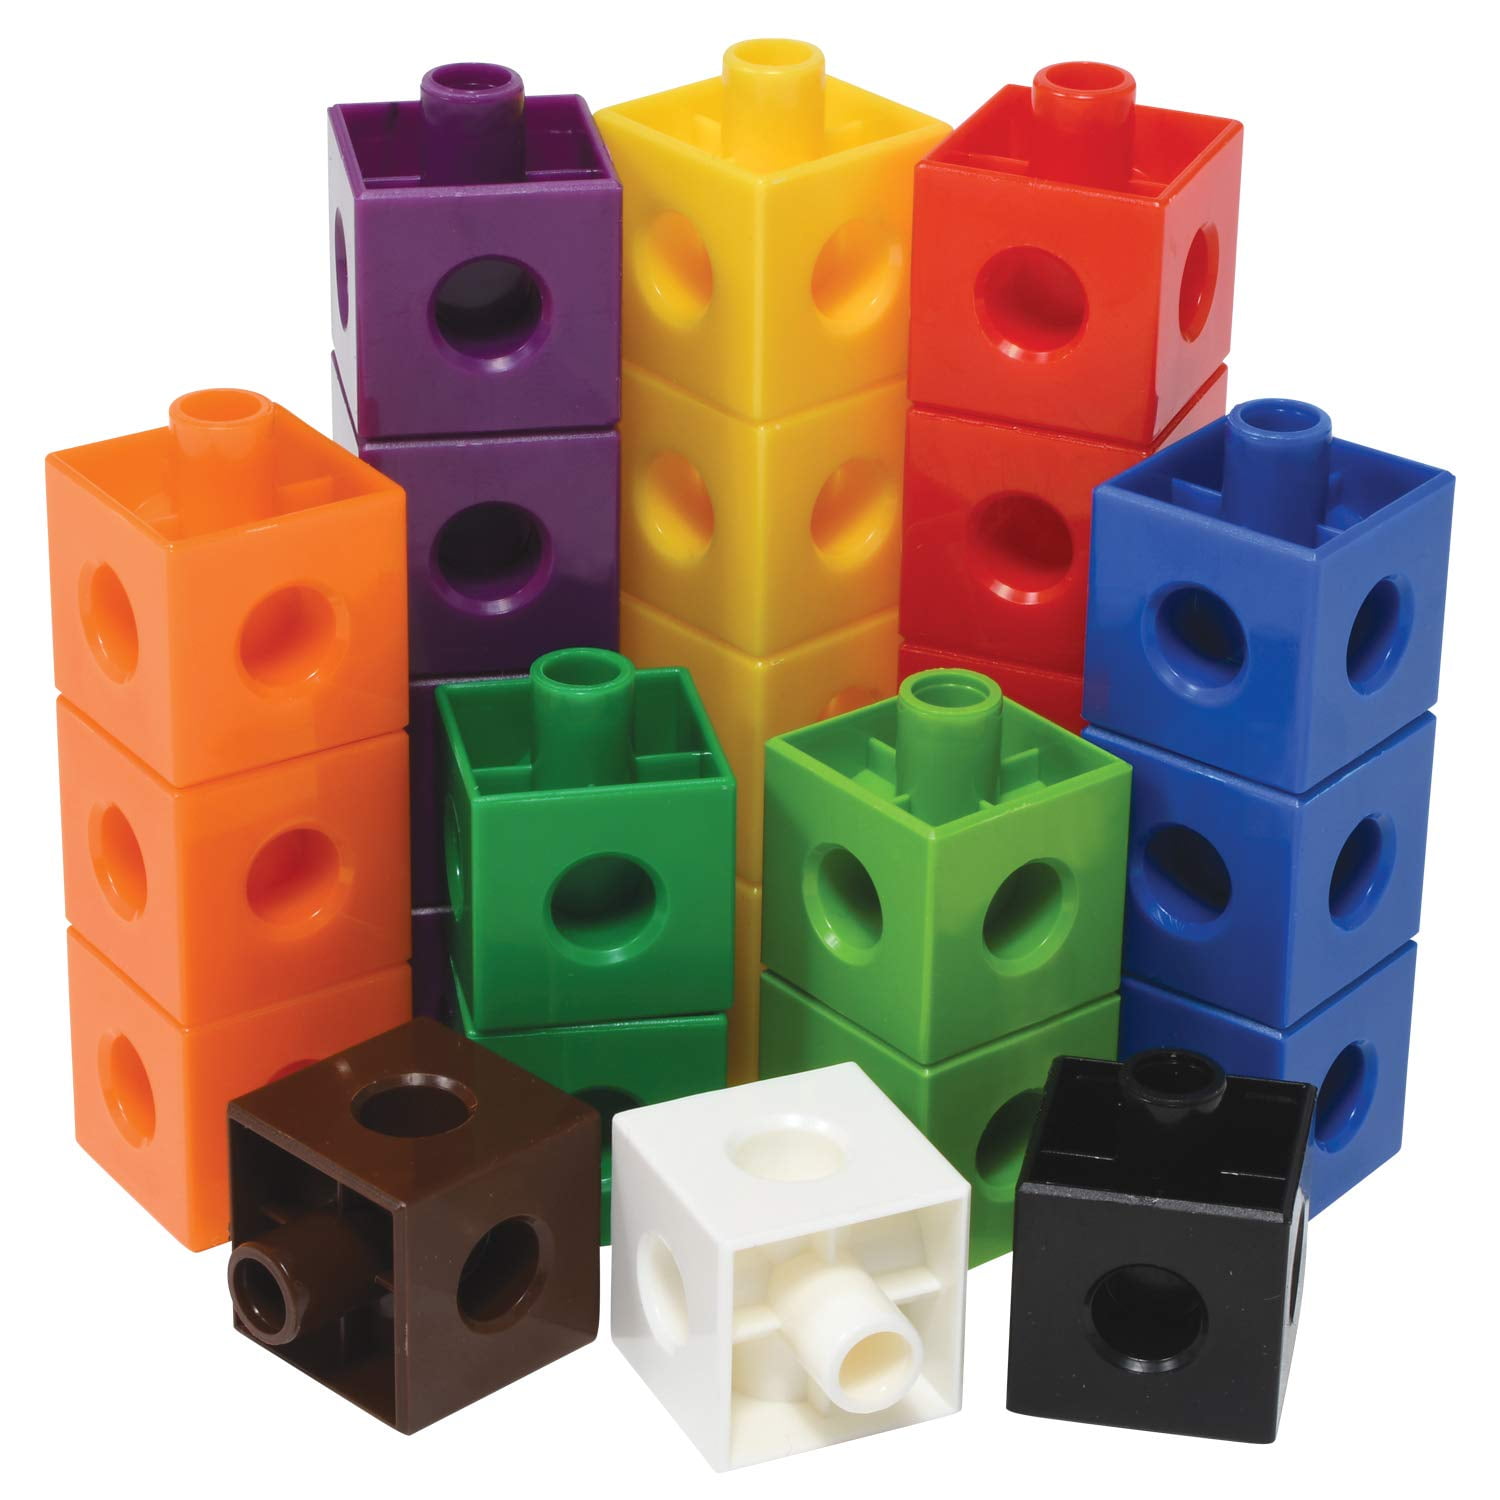 36 Pieces Children's Building Blocks Educational Toy EDX Foam Geometric Solids 